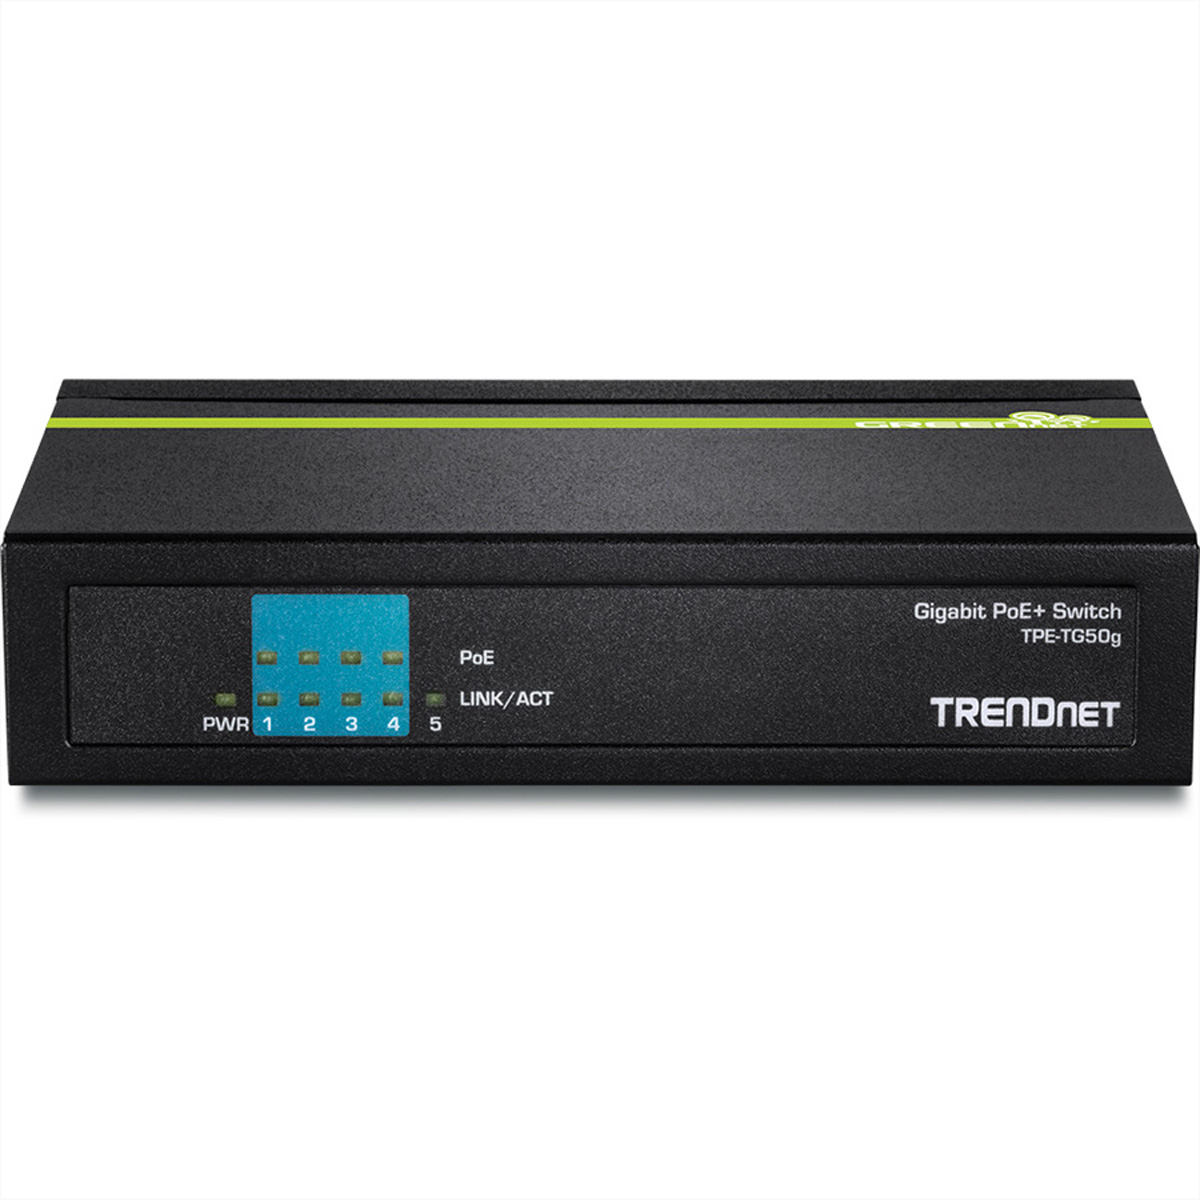 TRENDNET TPE-TG50g Gigabit Ethernet Switch 5-Port PoE+ Gigabit Switch